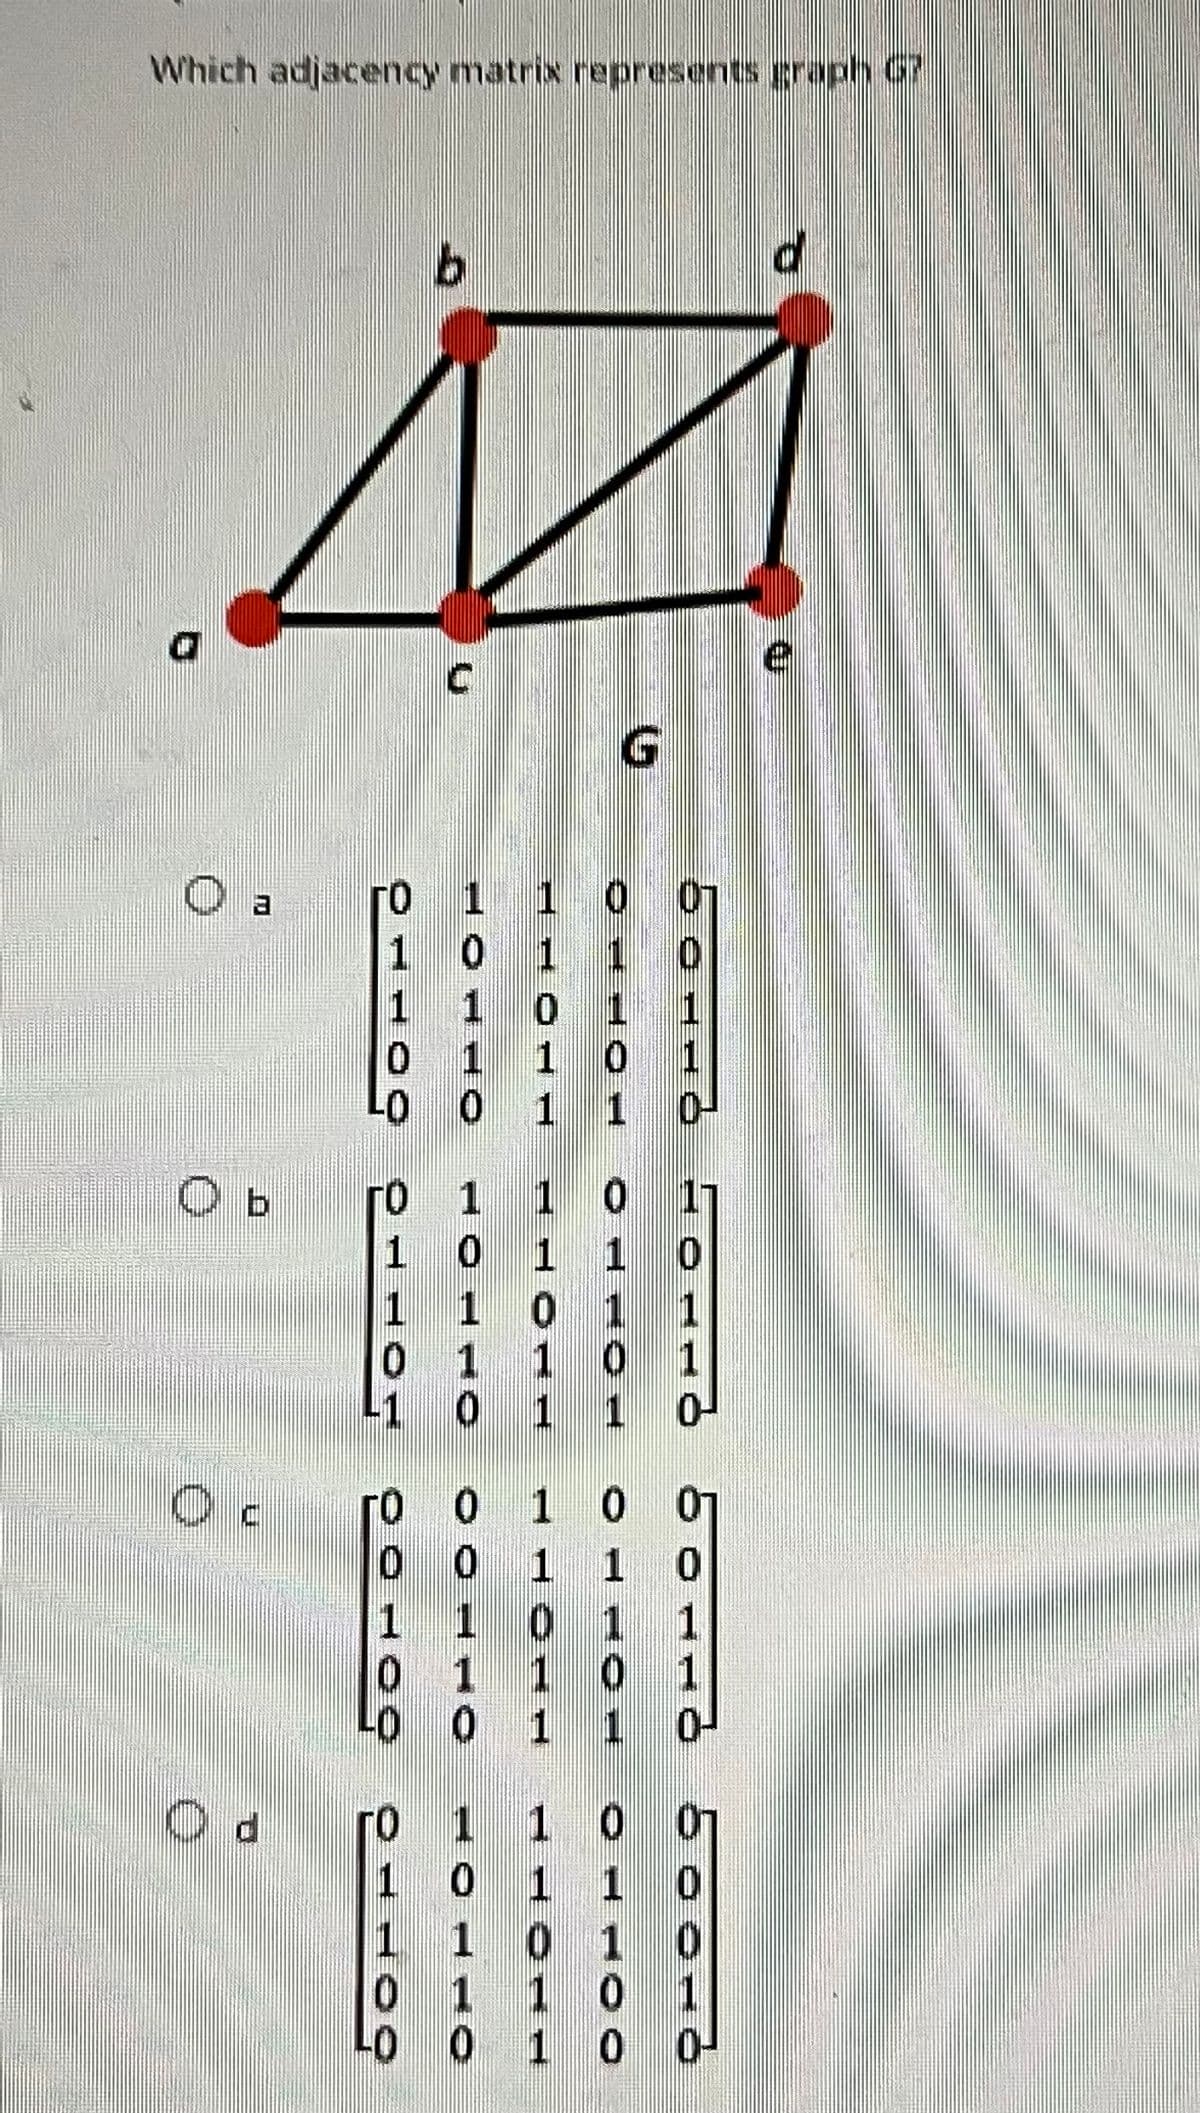 Which adjacency matrix represents graph 67
5
bord ㅇㅇ ㅇㅇ
0
S-CEH
E O
TH
O b
OLTO
ㅇㅇㅇ ㅇㅇ ㅇㅇ~09
ㅇㅁㄴㅇ
50046
PO
0
1
CHOO